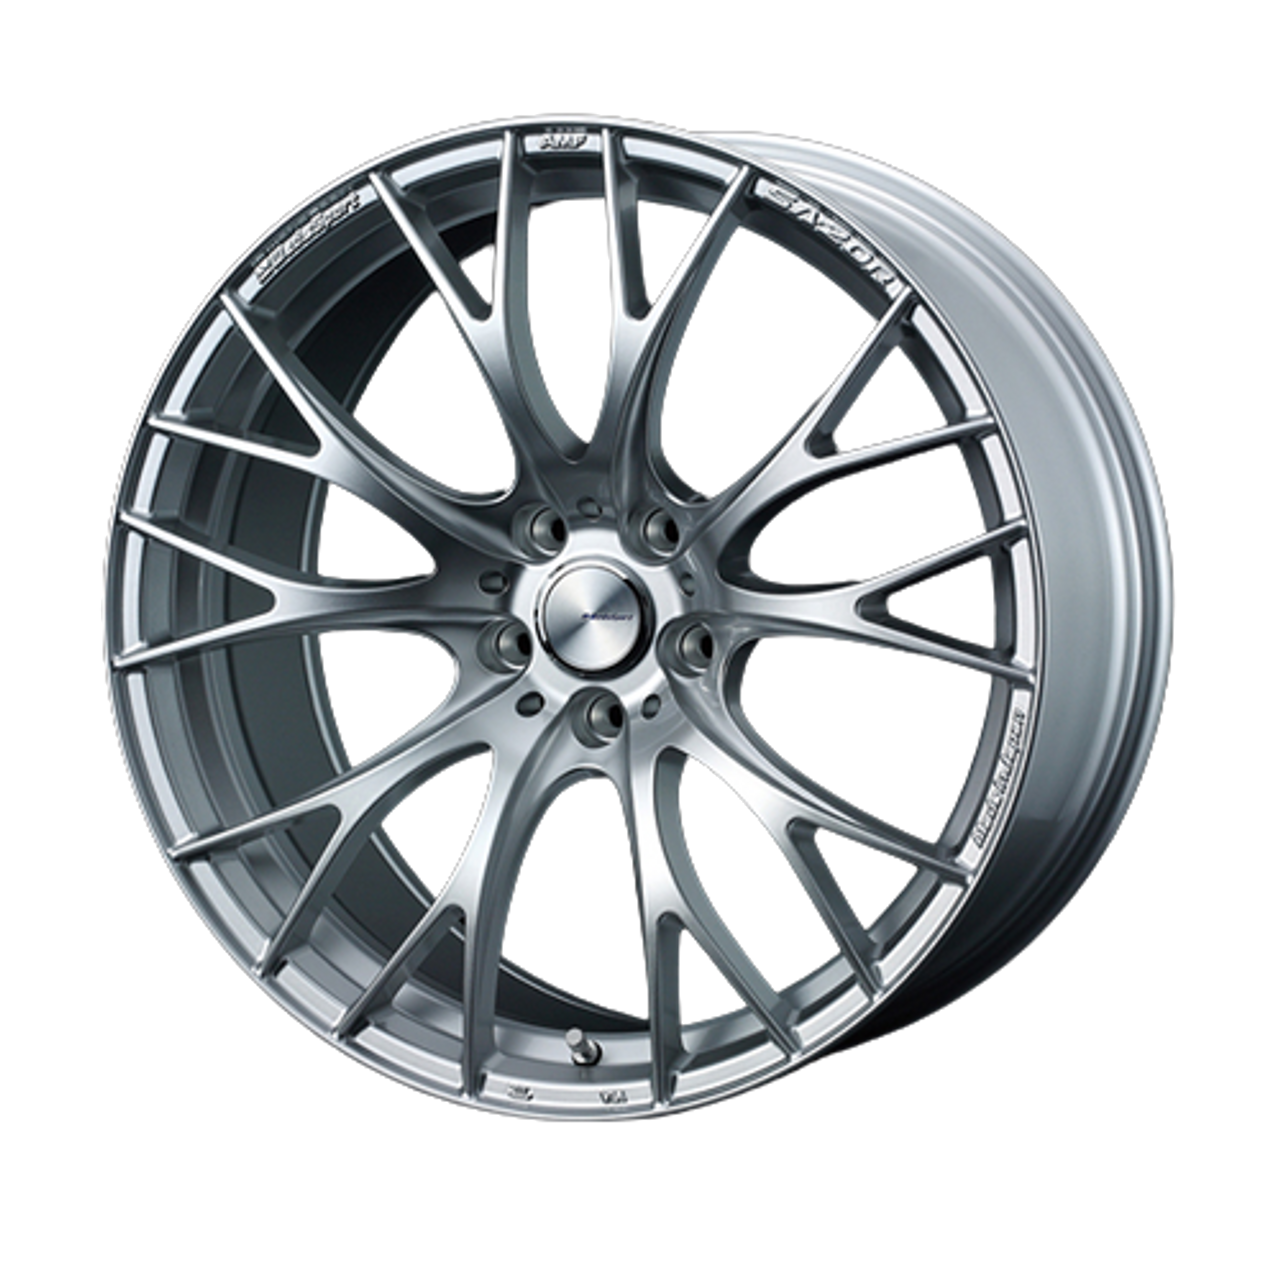 WedsSport wheels SA-20R 20x9.5J +38 5x114.3 VI Silver